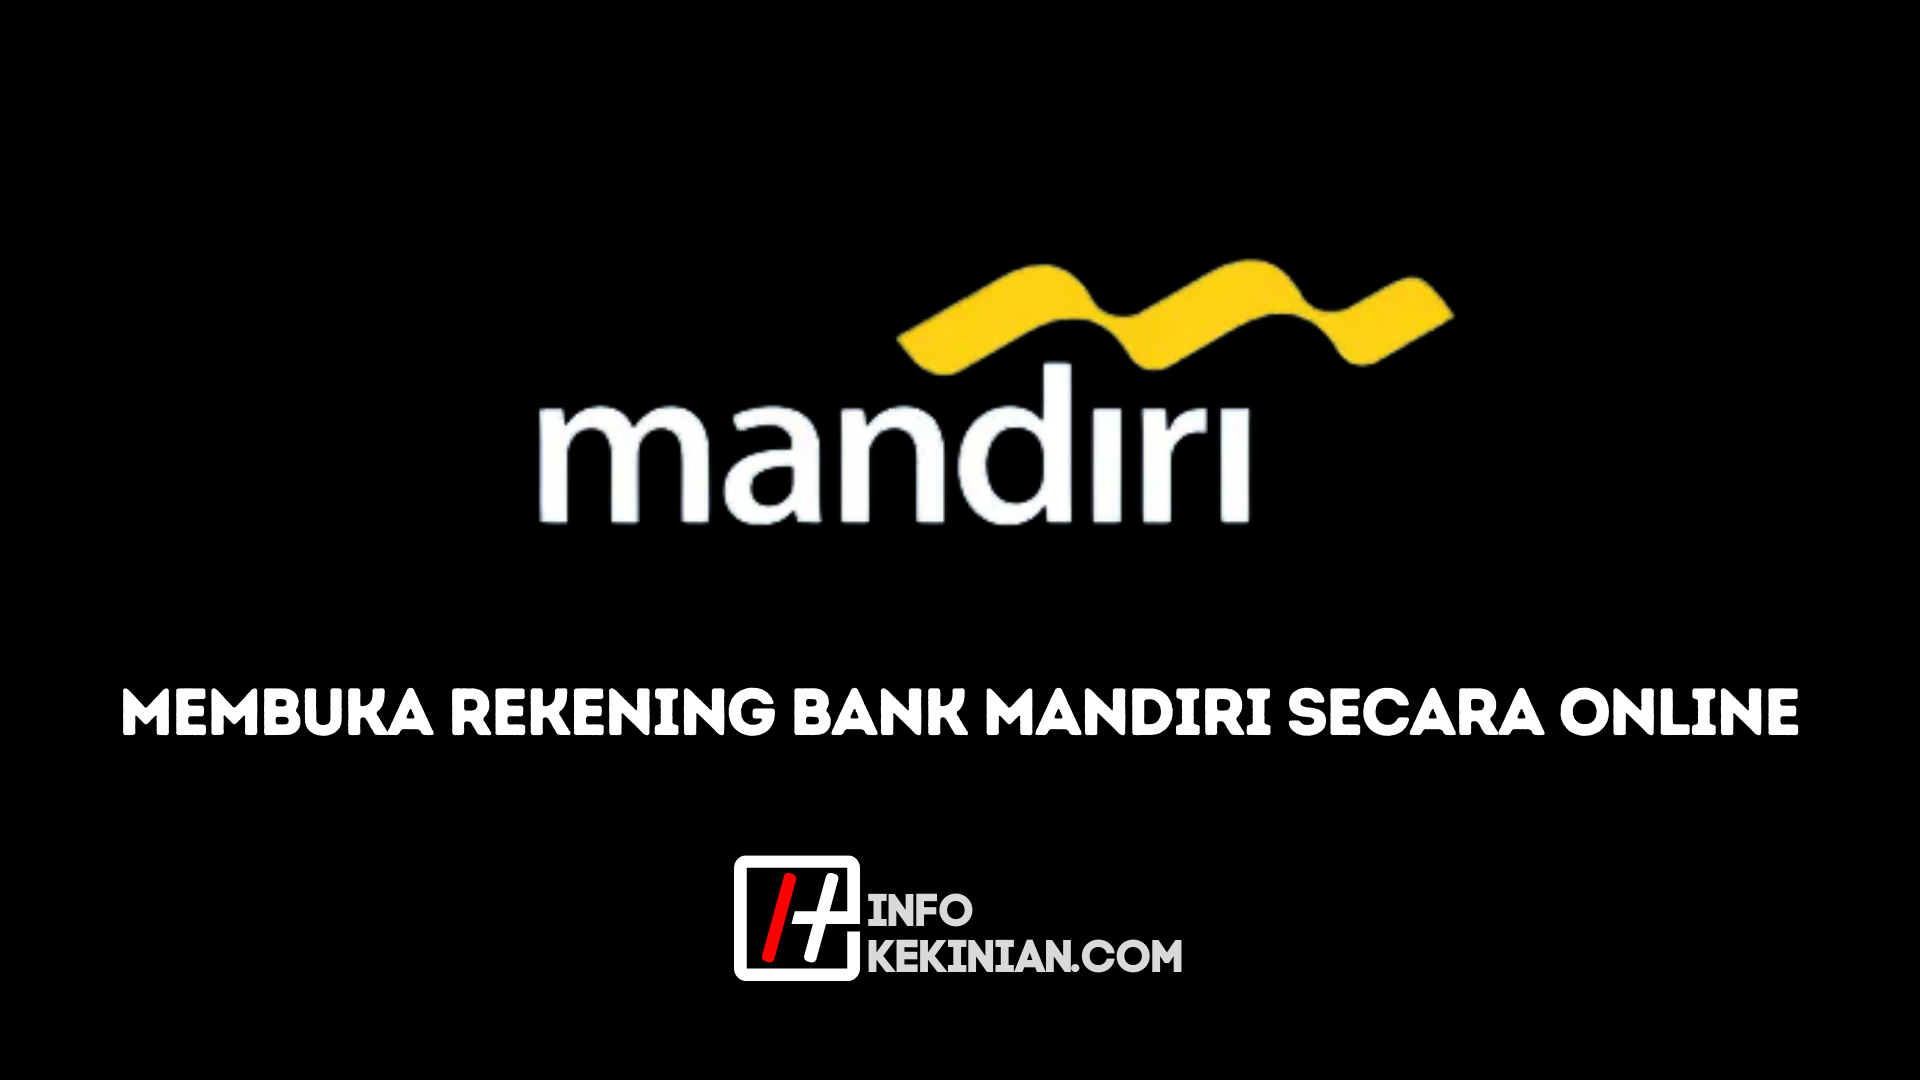 Jak otworzyć konto bankowe Mandiri 